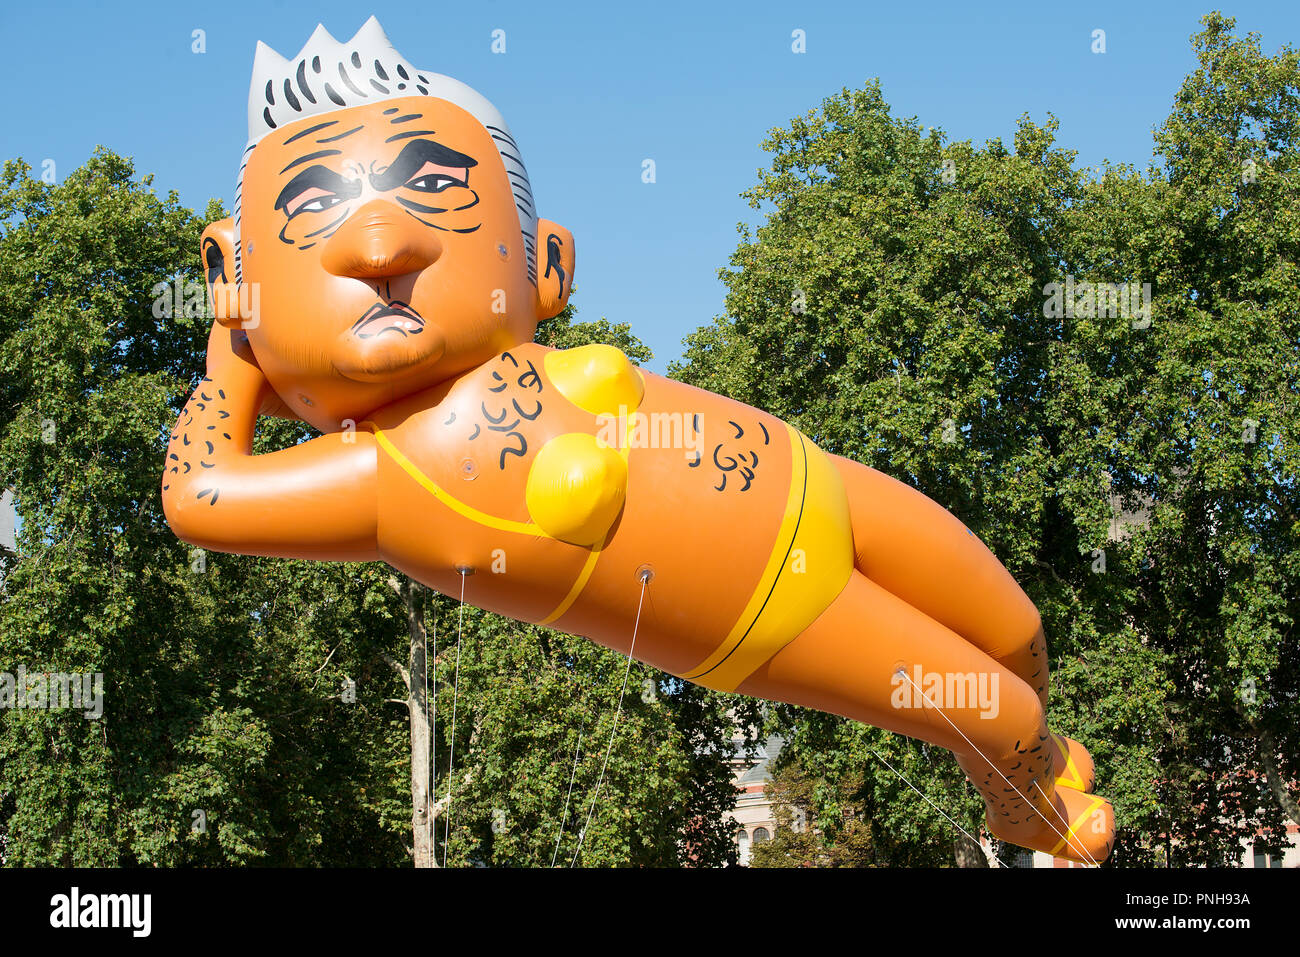 Kampagne organisiert von yanny Bruere Sadiq Khan als Bürgermeister von London zu stürzen, mit einem riesigen Bikini-plattierten Ballon von Herrn Khan, London wieder sicherer zu machen. Stockfoto